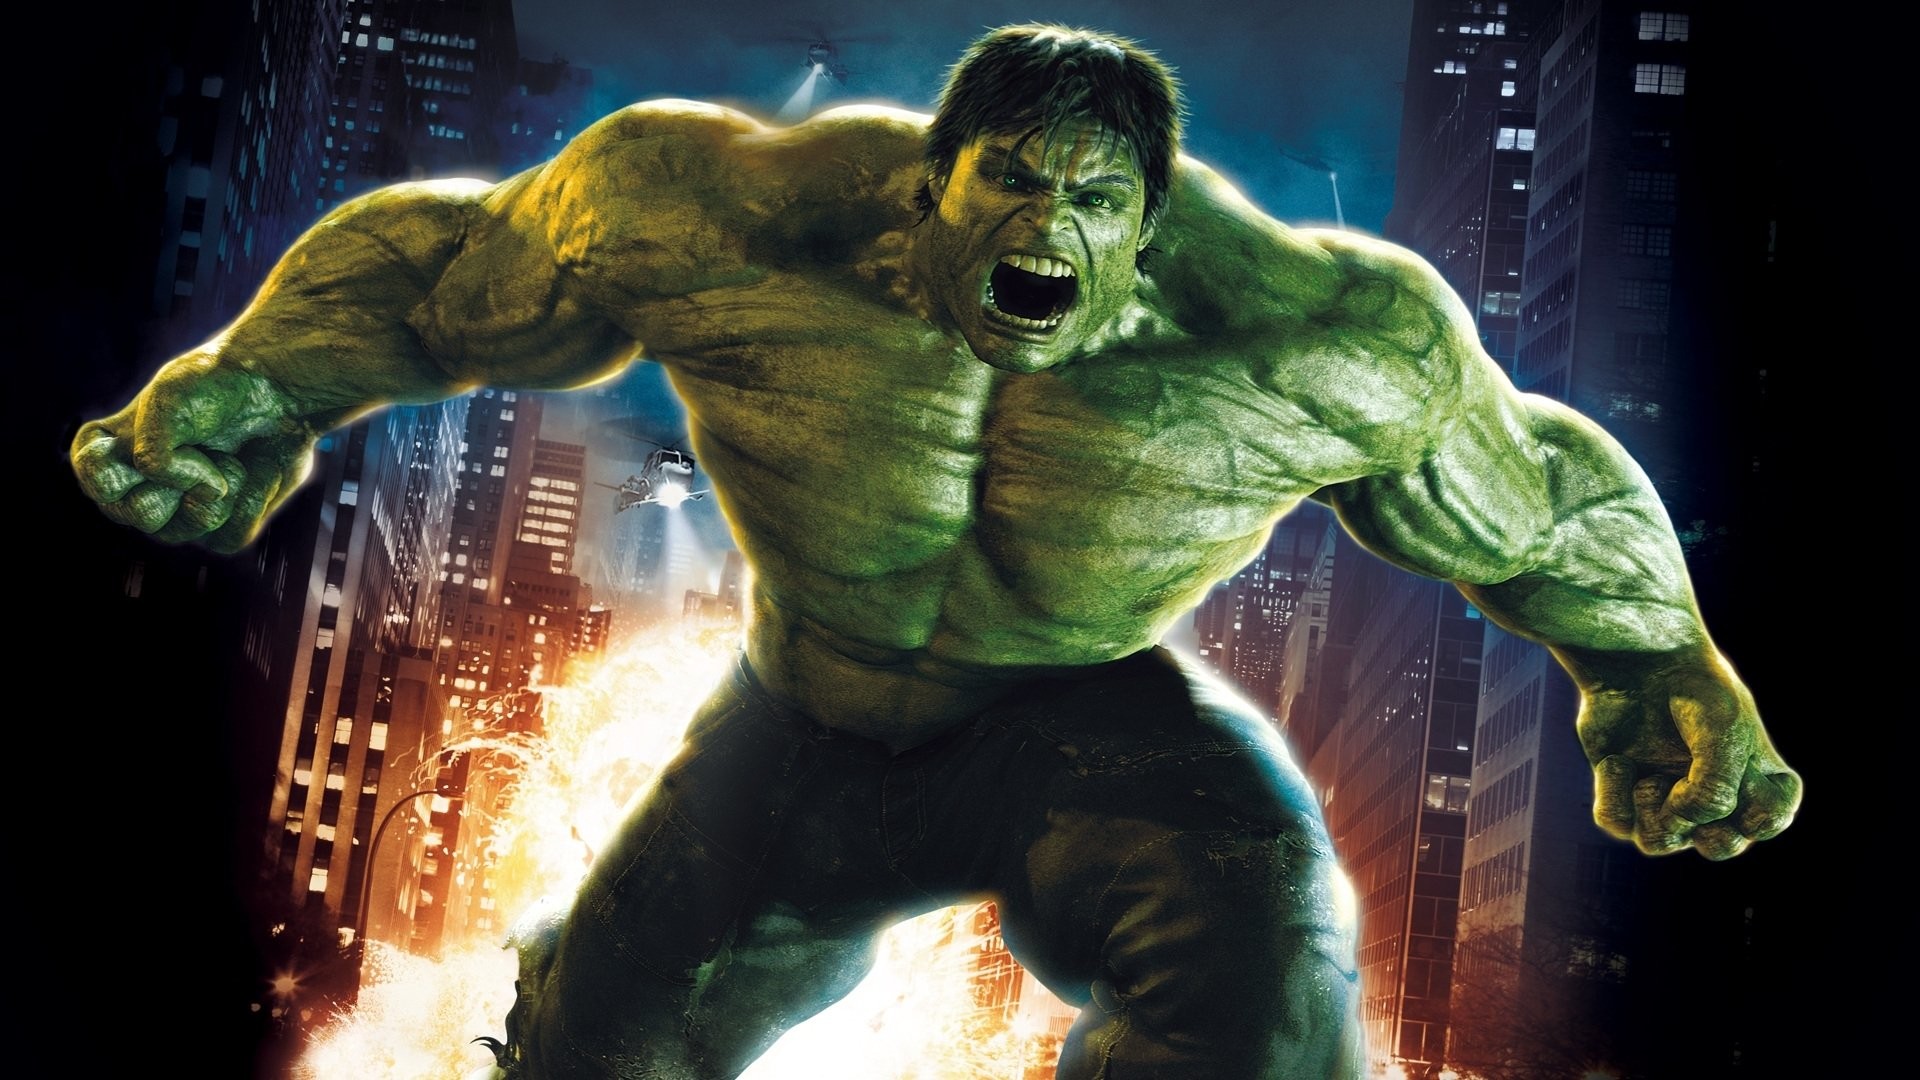 Hd Wallpaper - Incredible Hulk - HD Wallpaper 